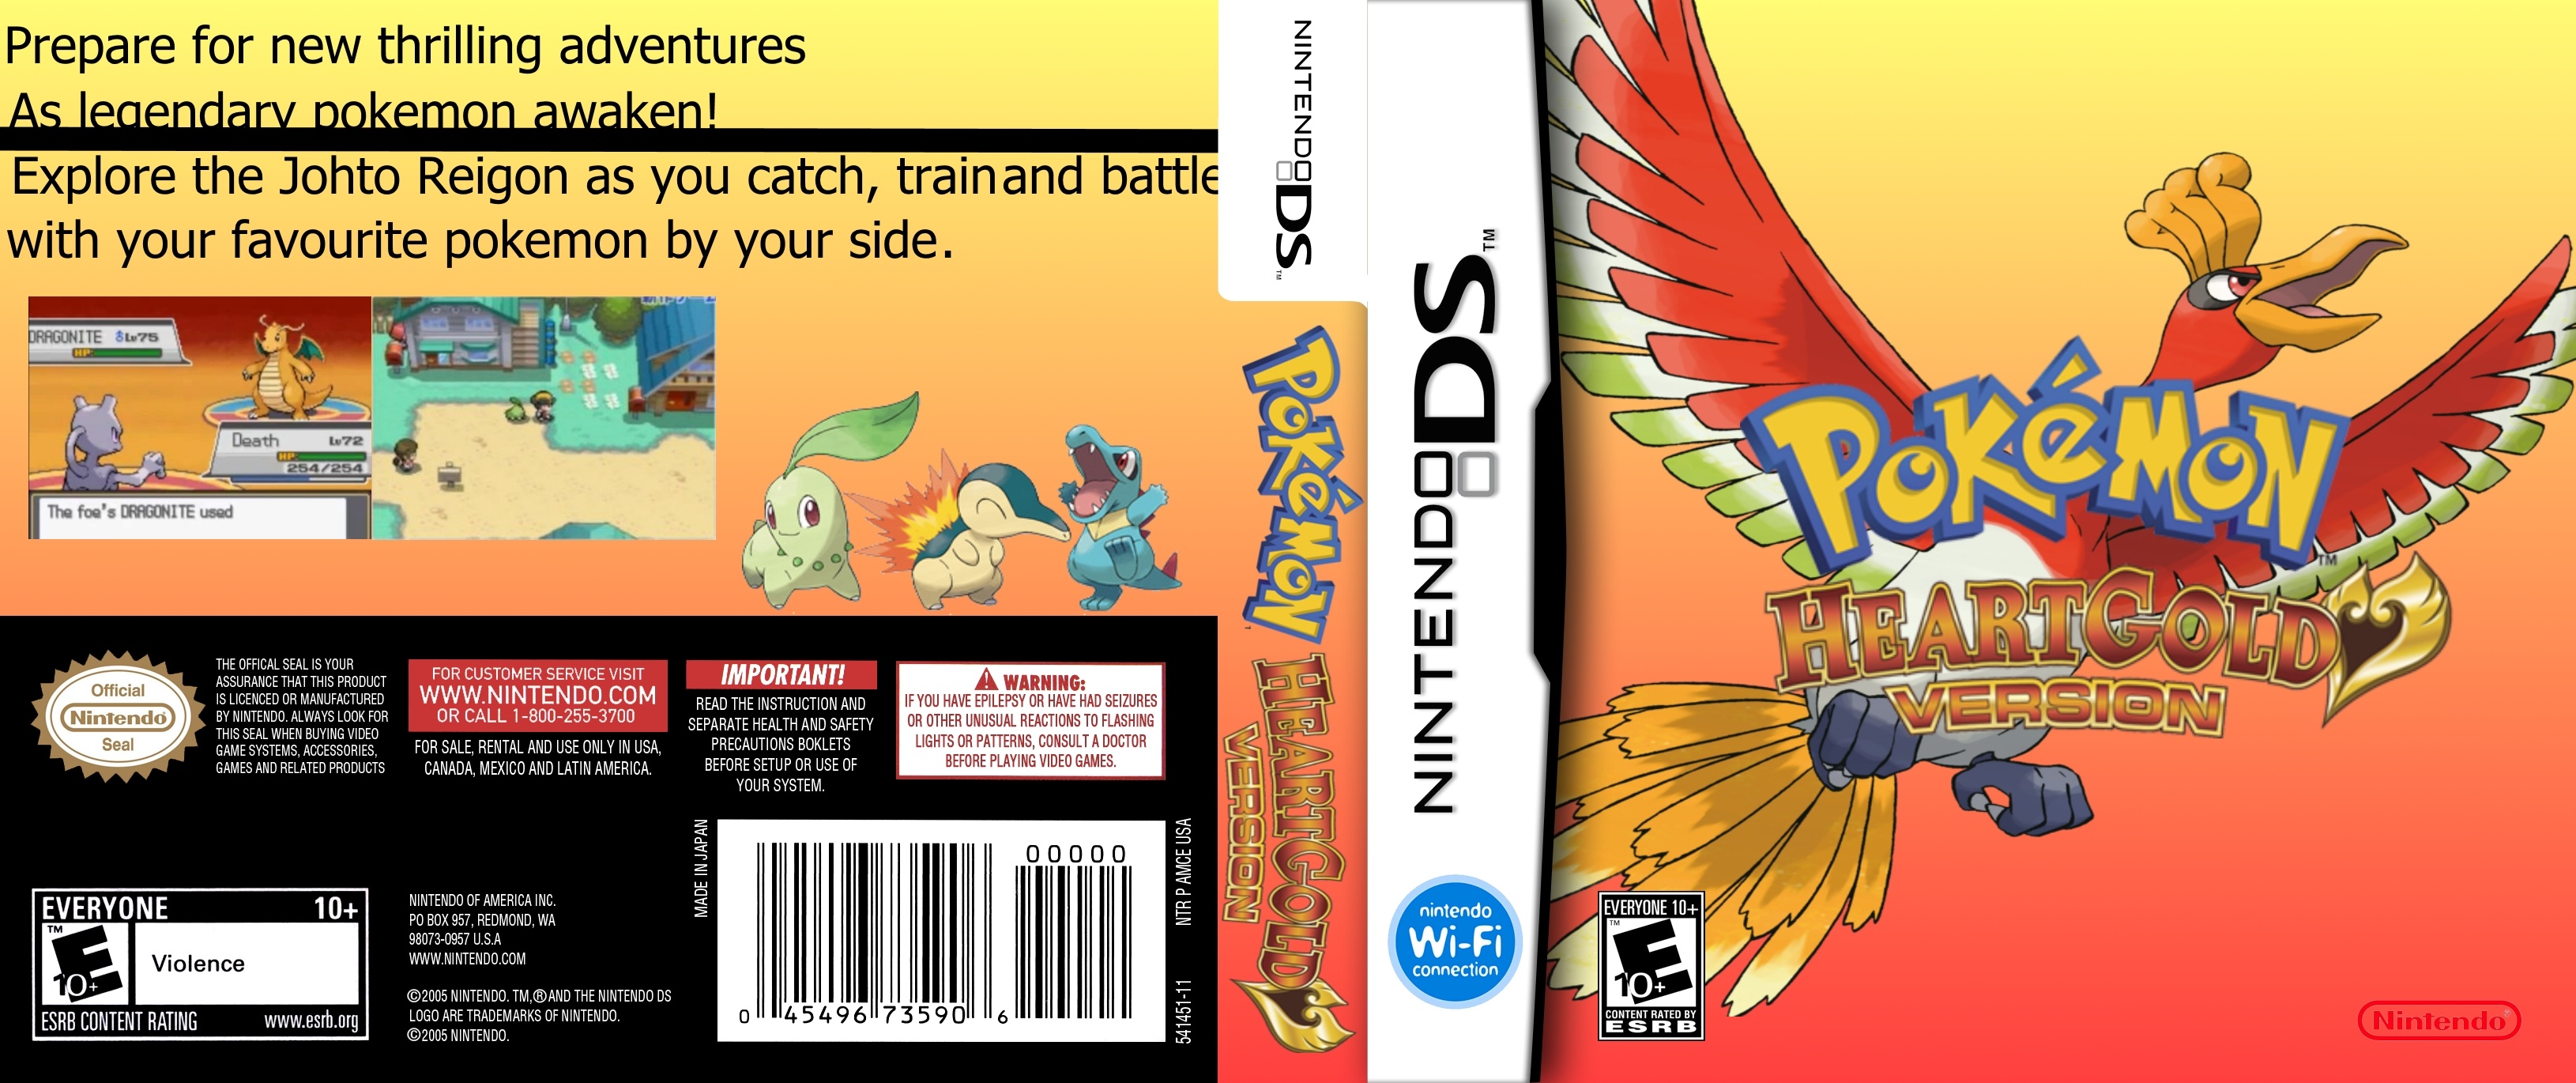 Pokemon: HeartGold Version box cover